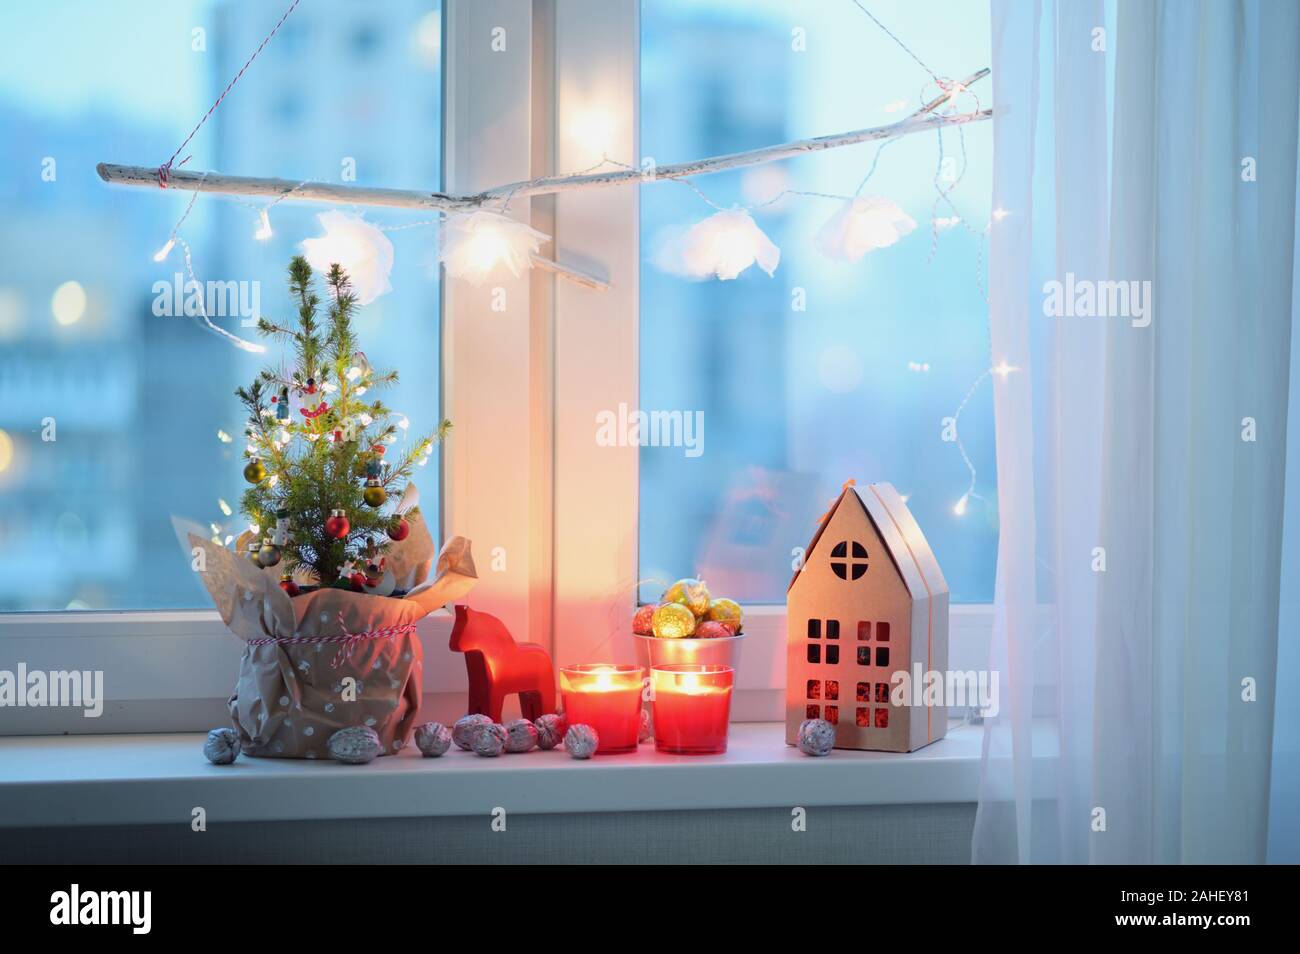 Weihnachtsbaum, Weihnachtsschmuck, Kerzen und Weihnachten Geschenk auf dem Fensterbrett Stockfoto